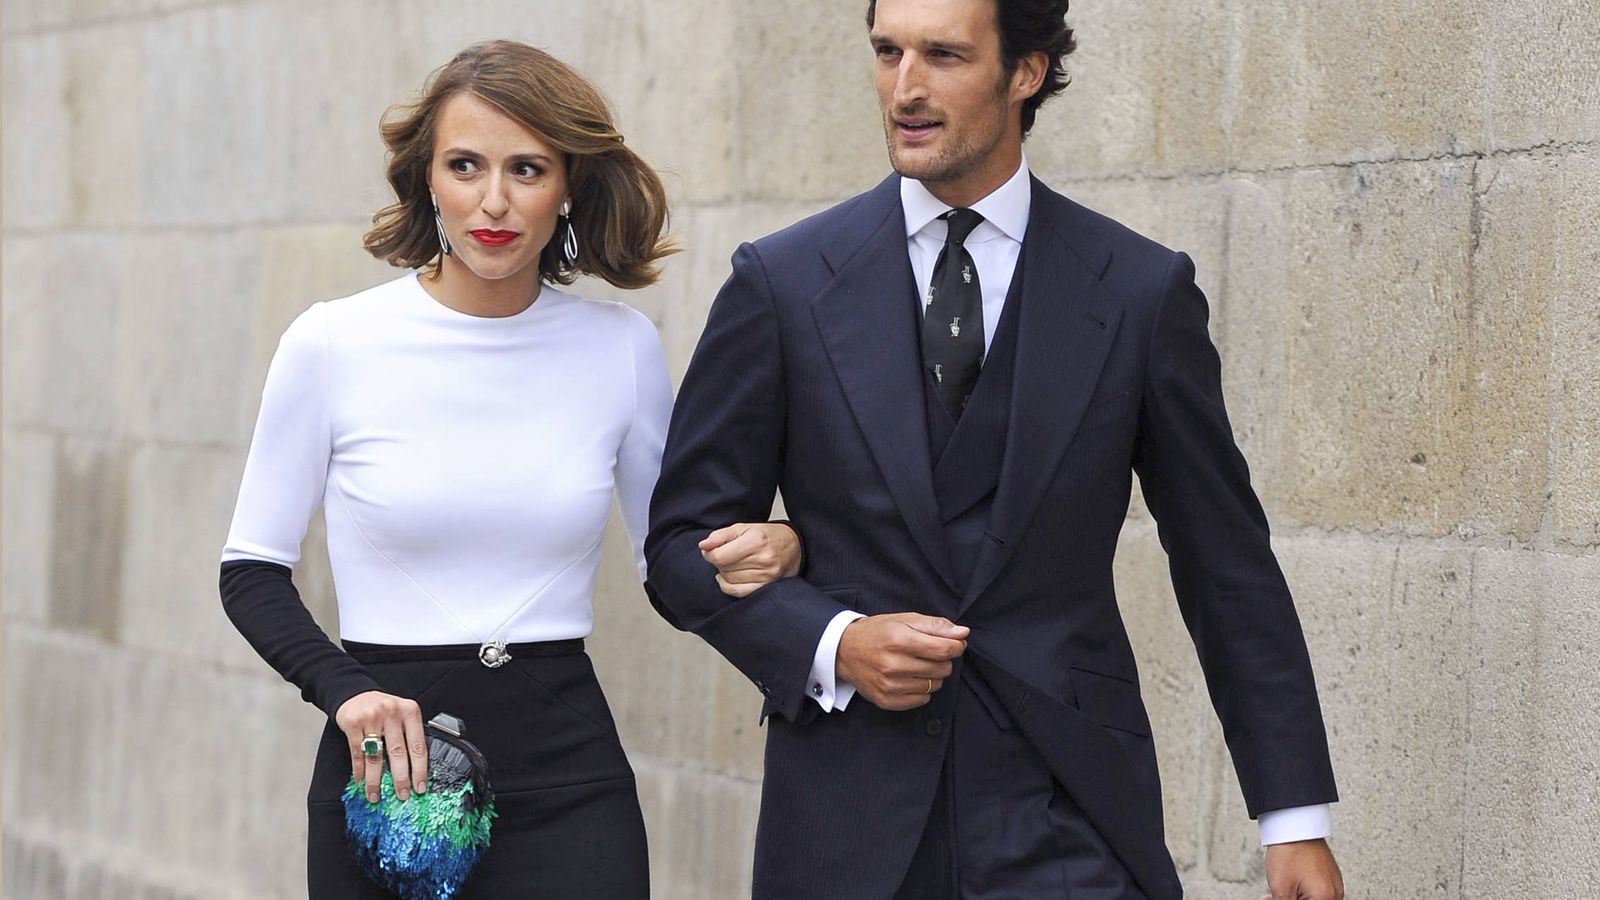 Foto: Rafa Medina y Laura Vecino son una de las parejas más elegantes del panorama celebrity actual. (Gtres)